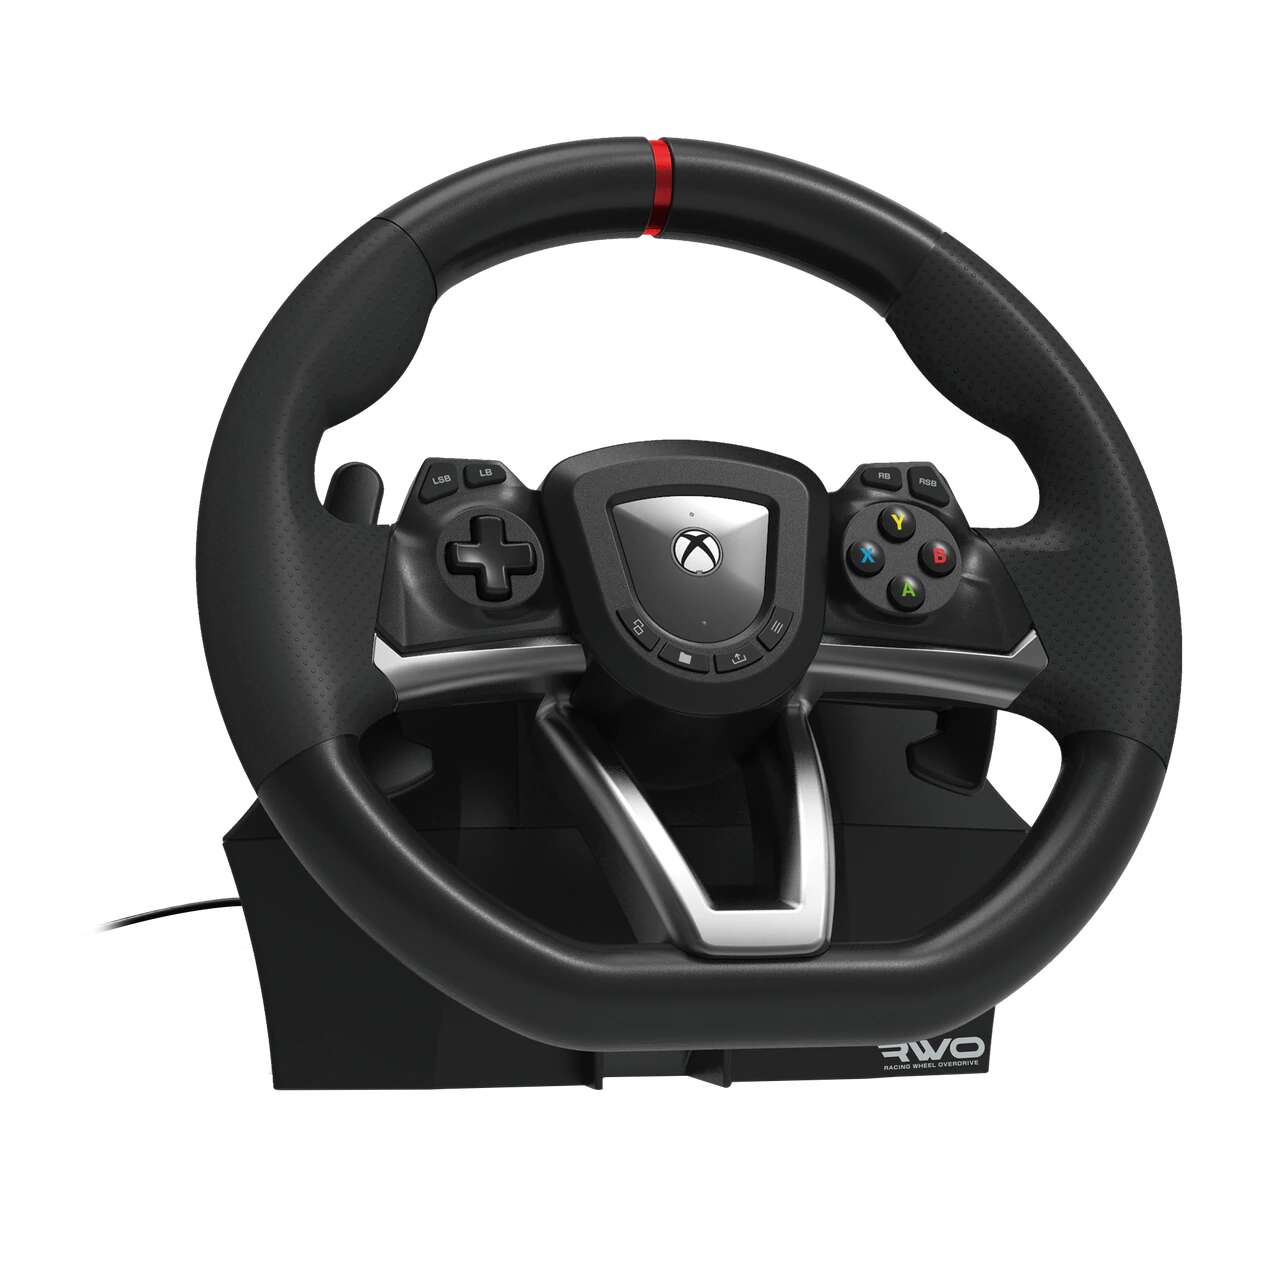 Hori racing wheel overdrive vezetékes kormány + pedál - xbox seri...